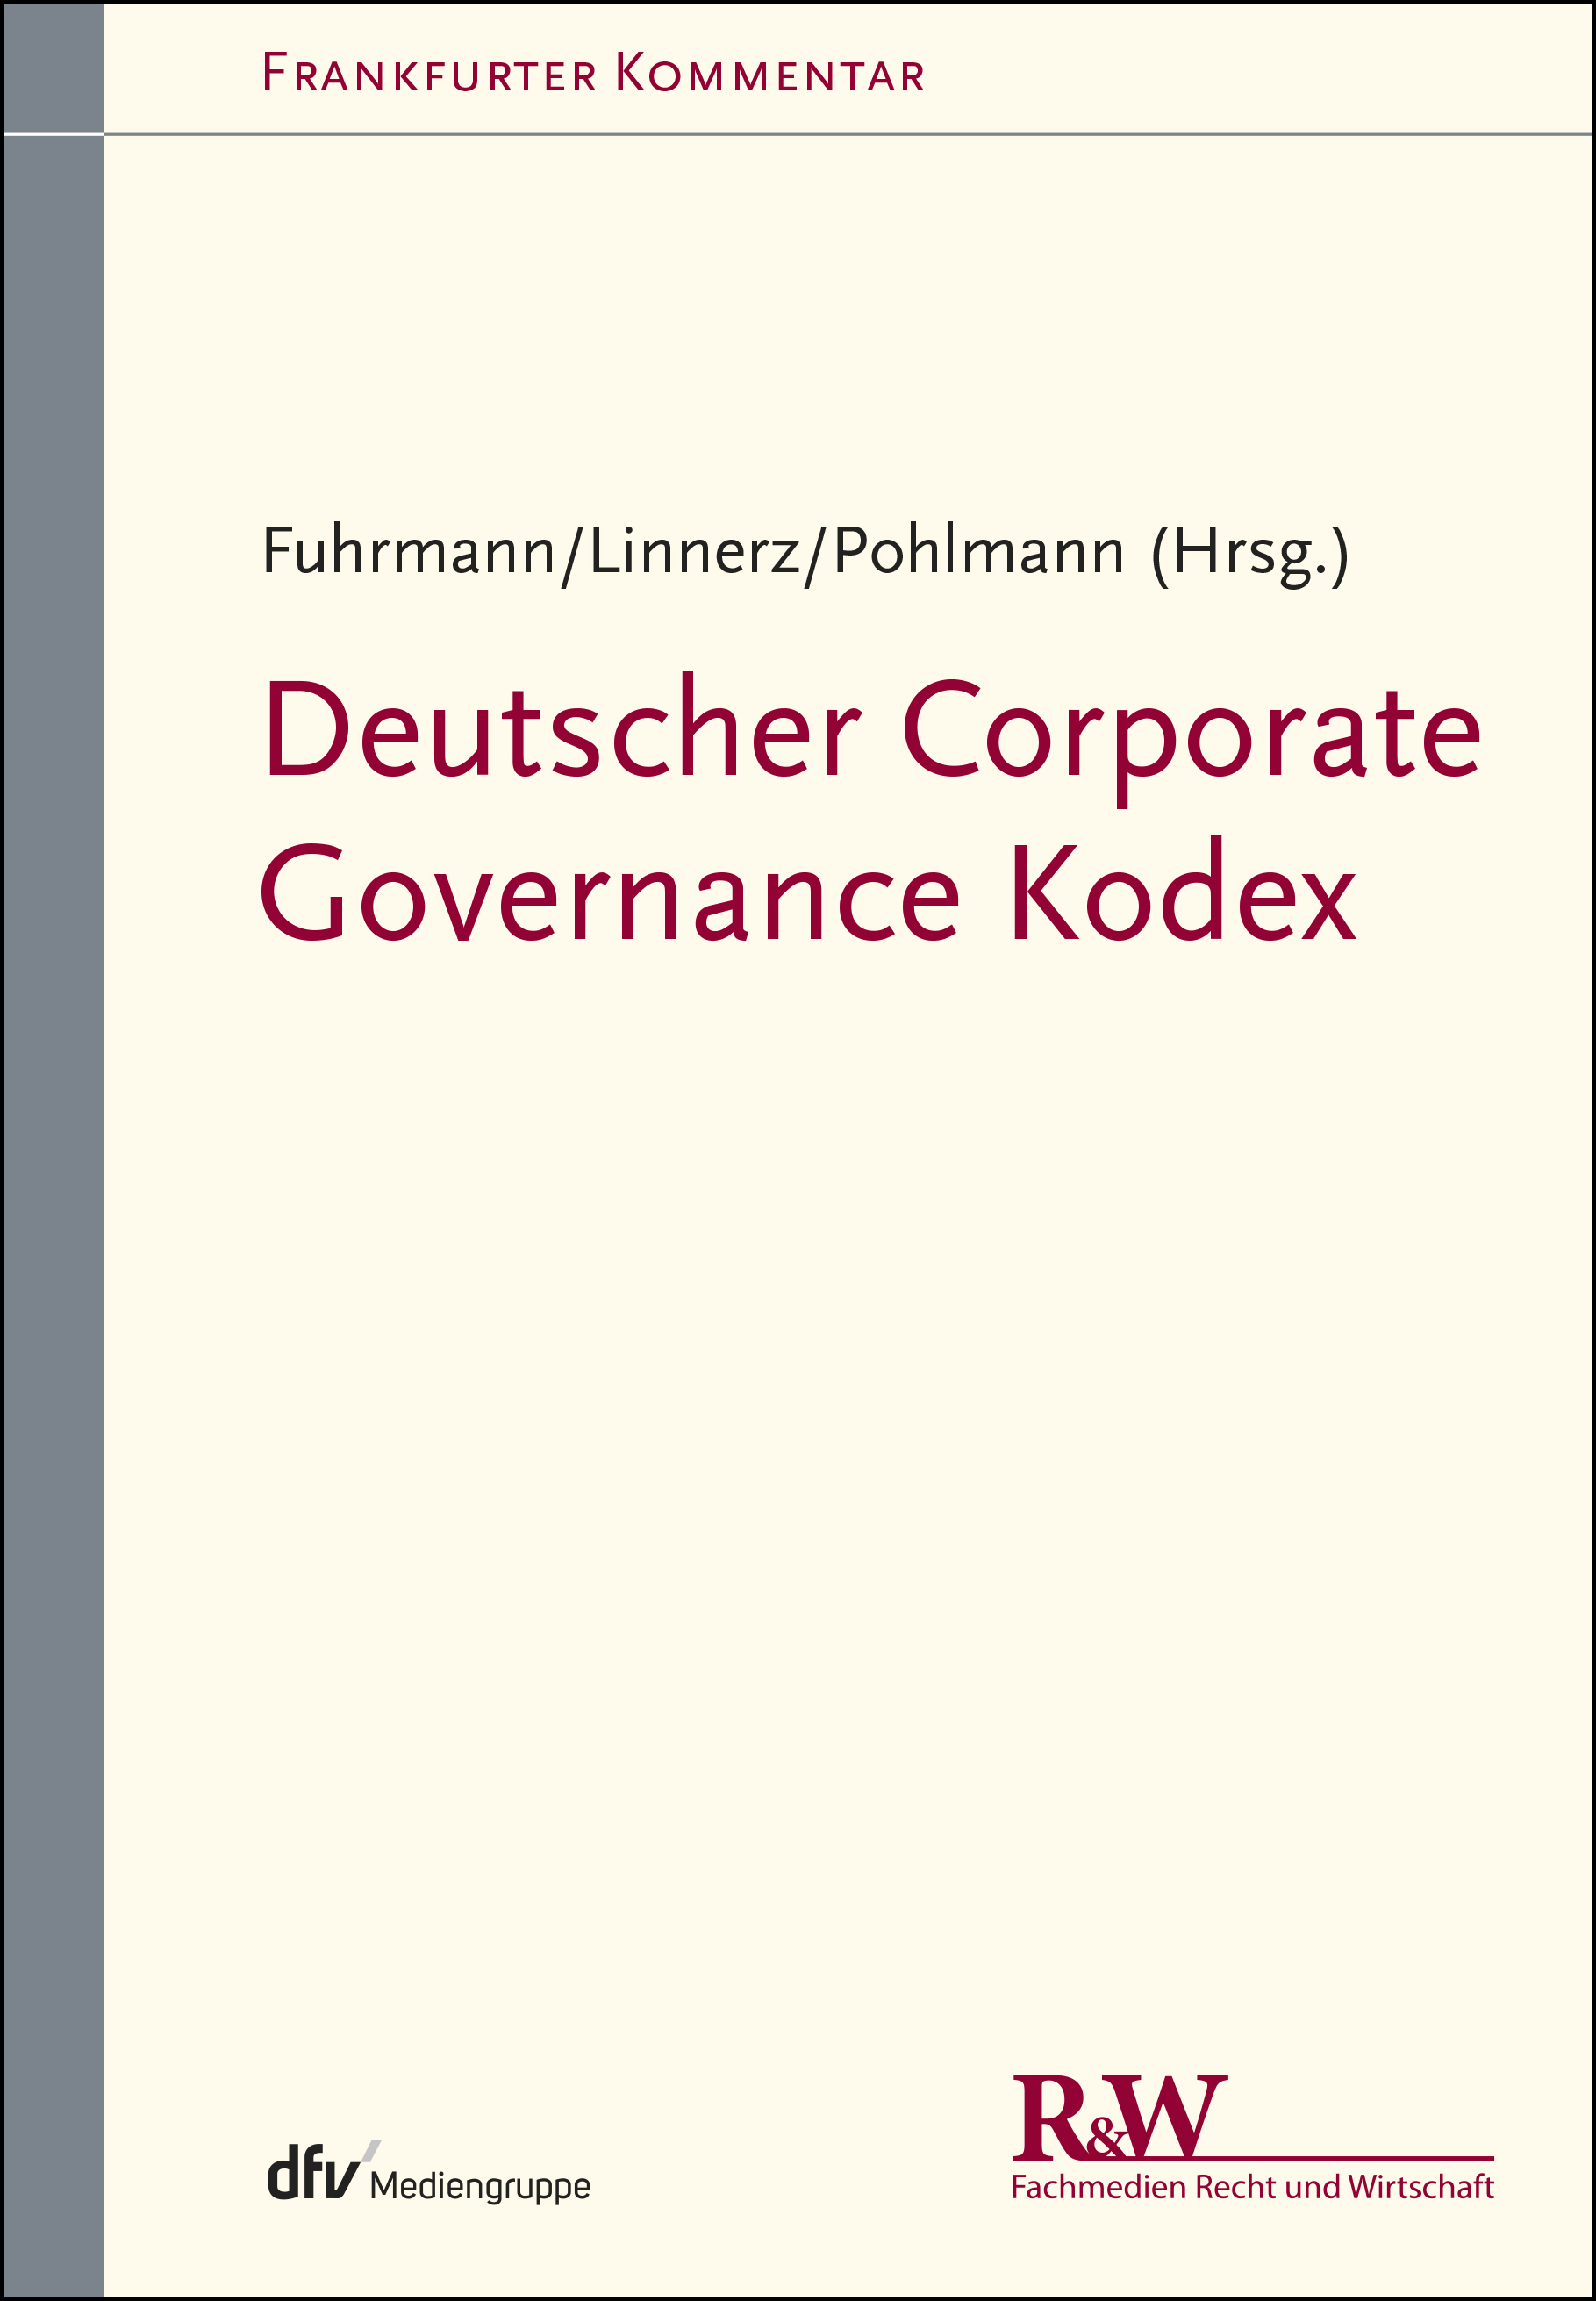 Abbildung: Deutscher Corporate Governance Kodex